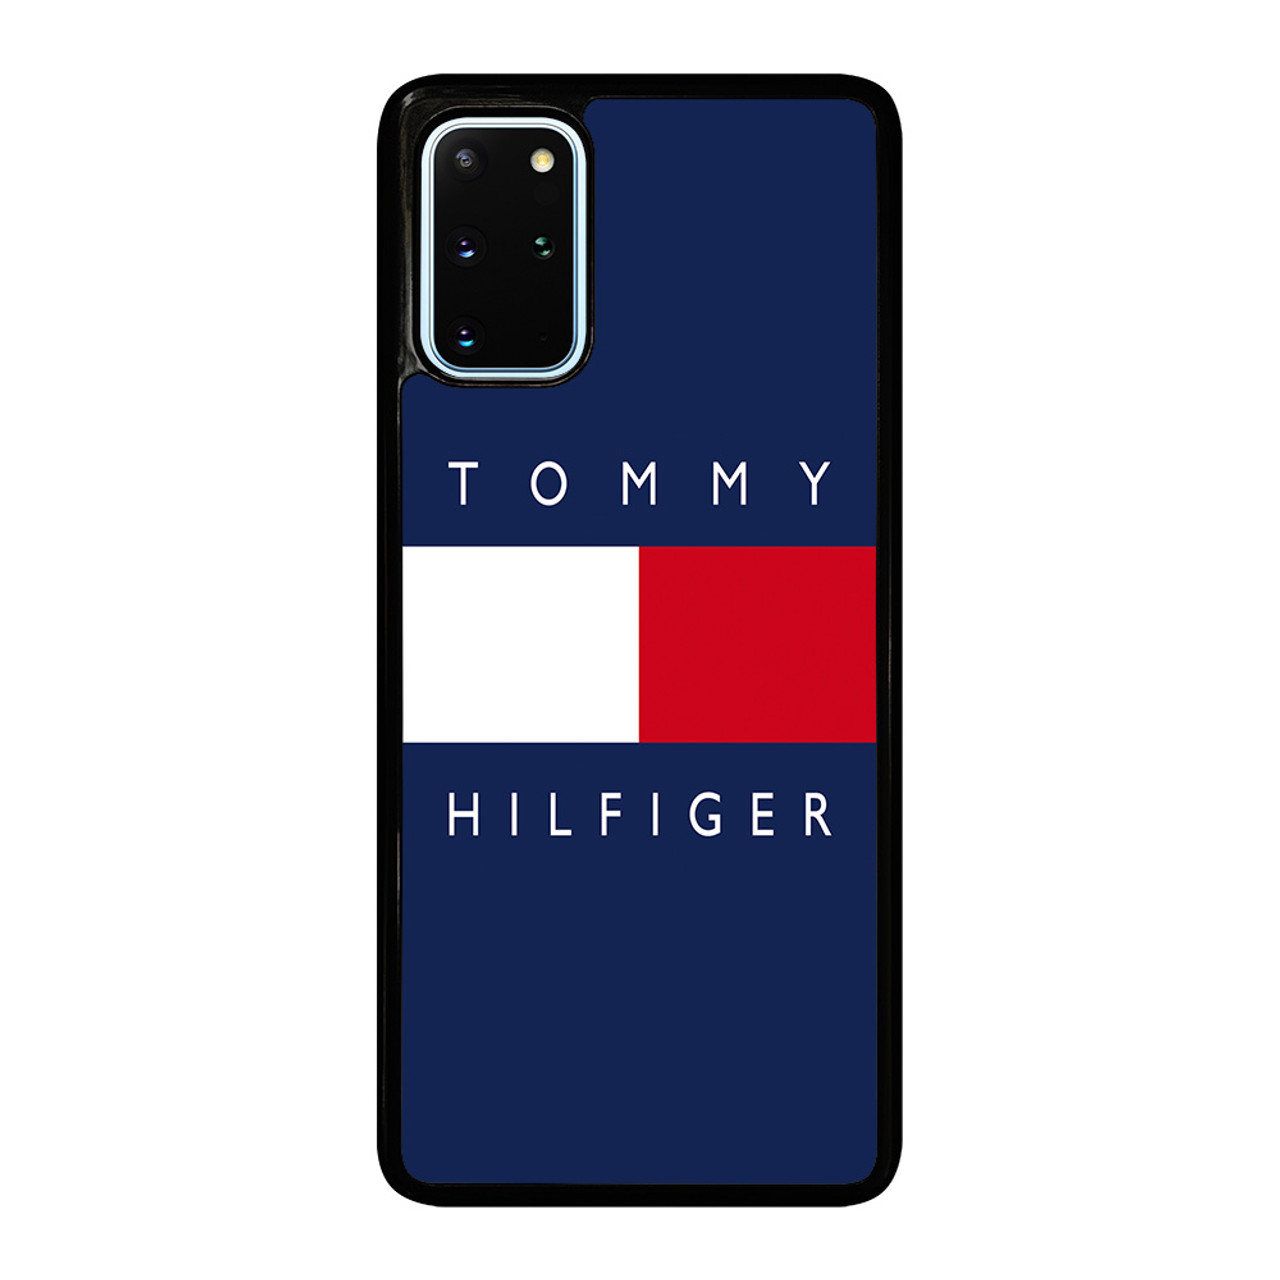 overschreden Regenachtig robot TOMMY HILFIGER Samsung Galaxy S20 Plus Case Cover